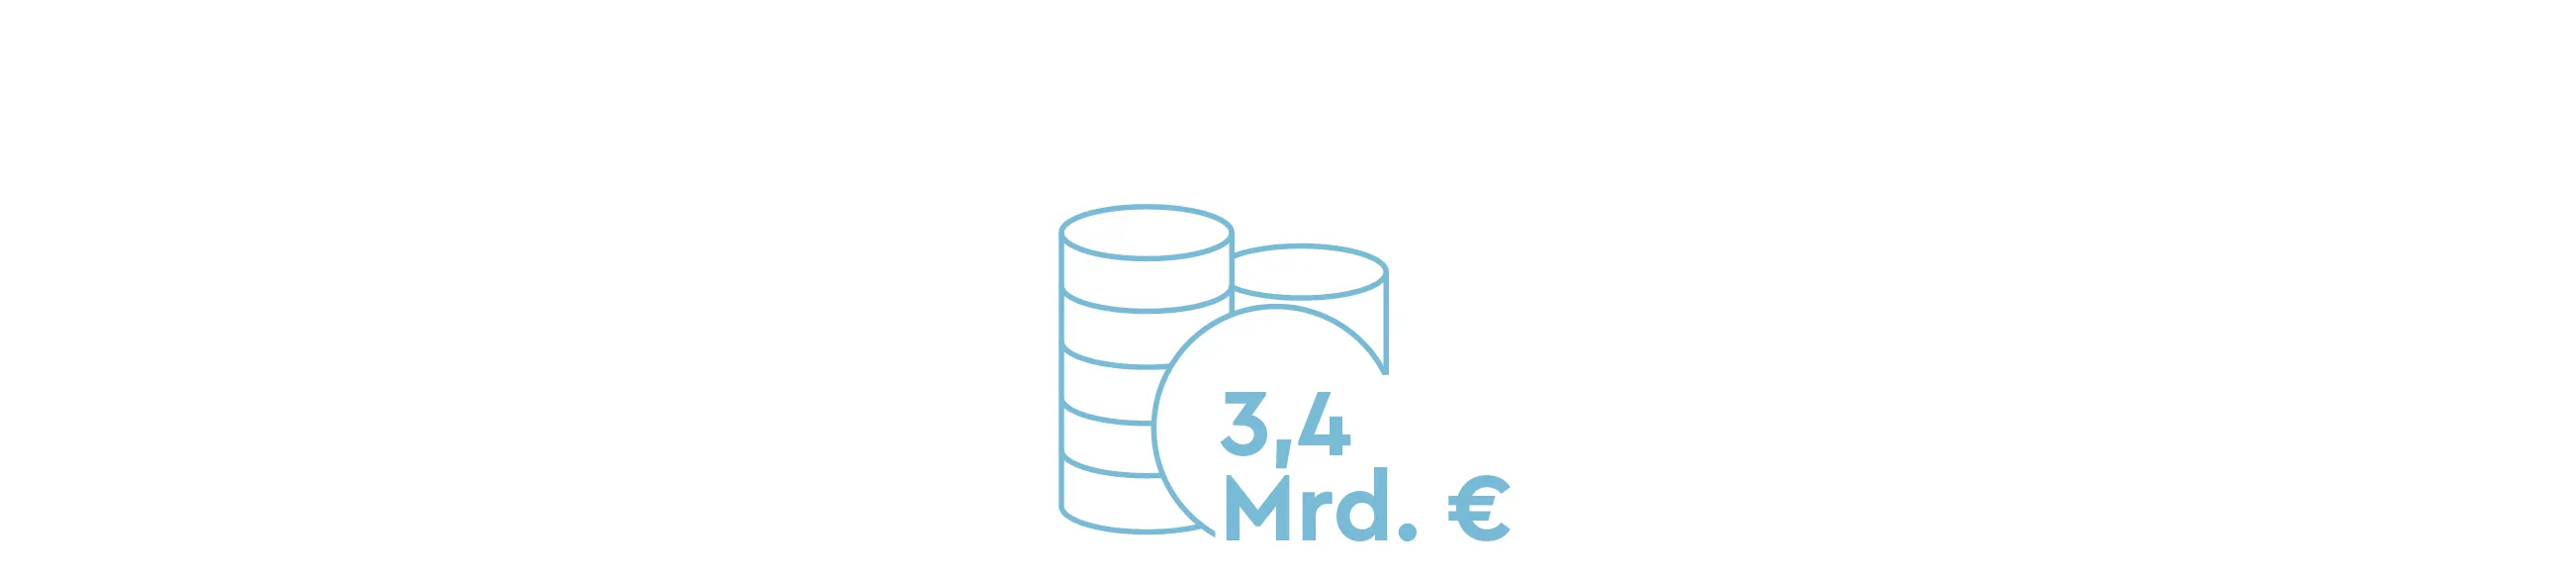 Illustration eines Münzstapels mit Text "3,4 Mrd. Euro"